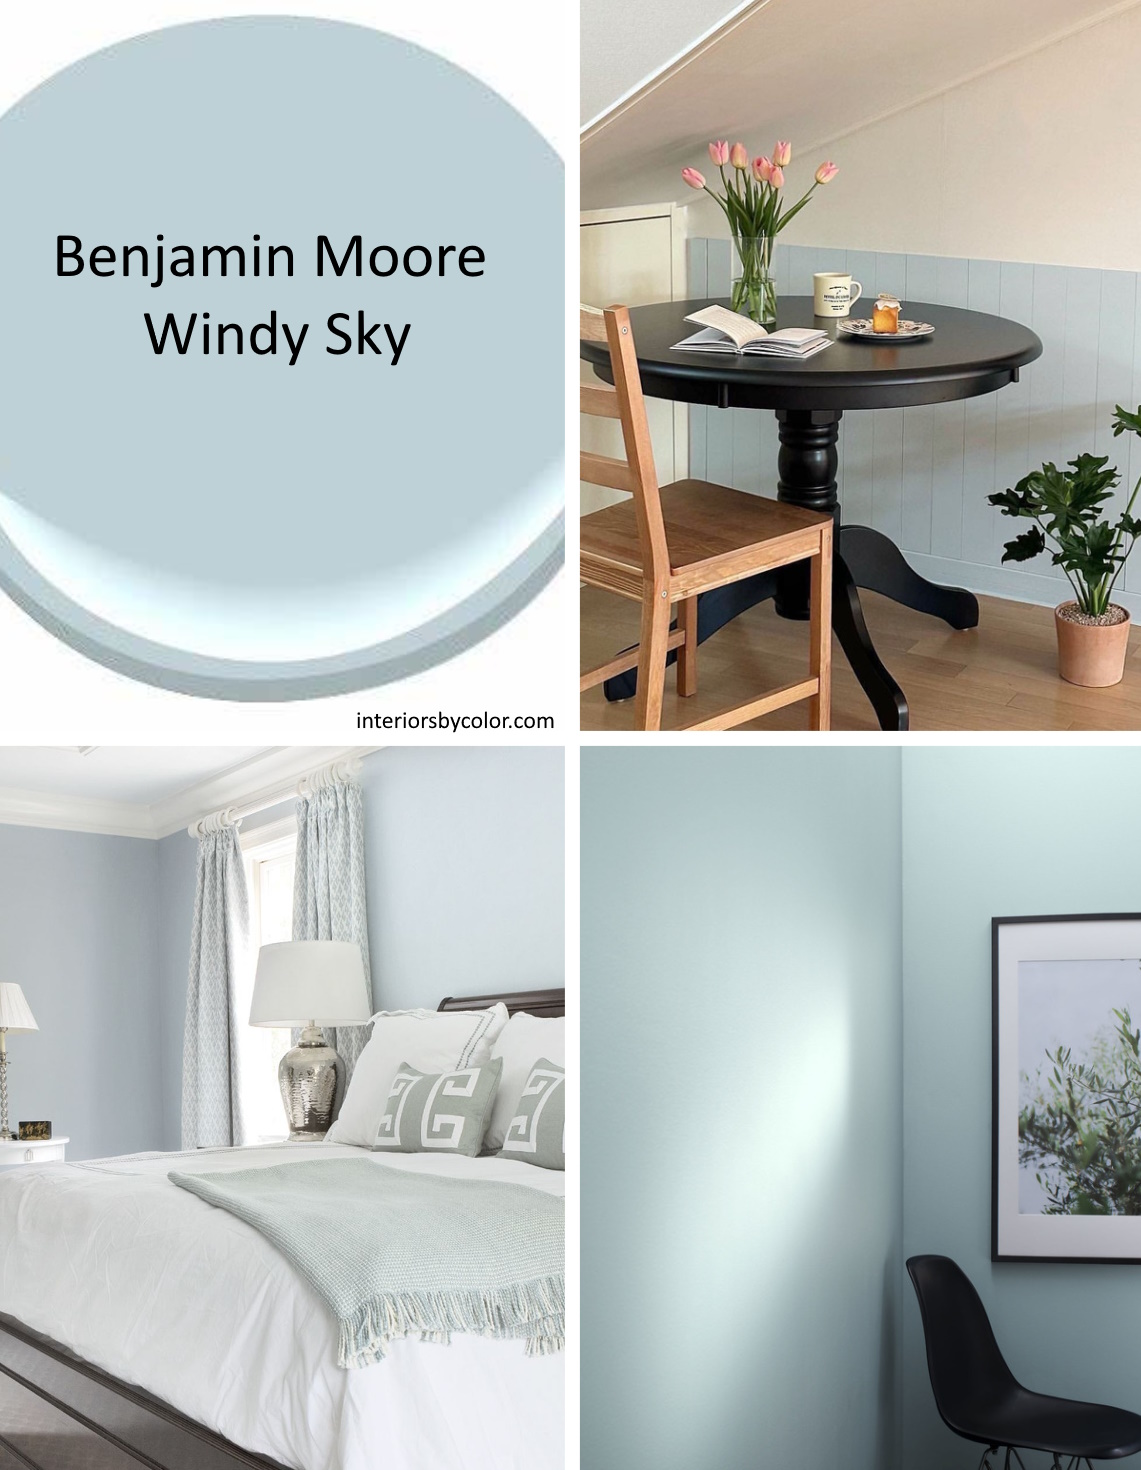 Benjamin Moore Windy Sky